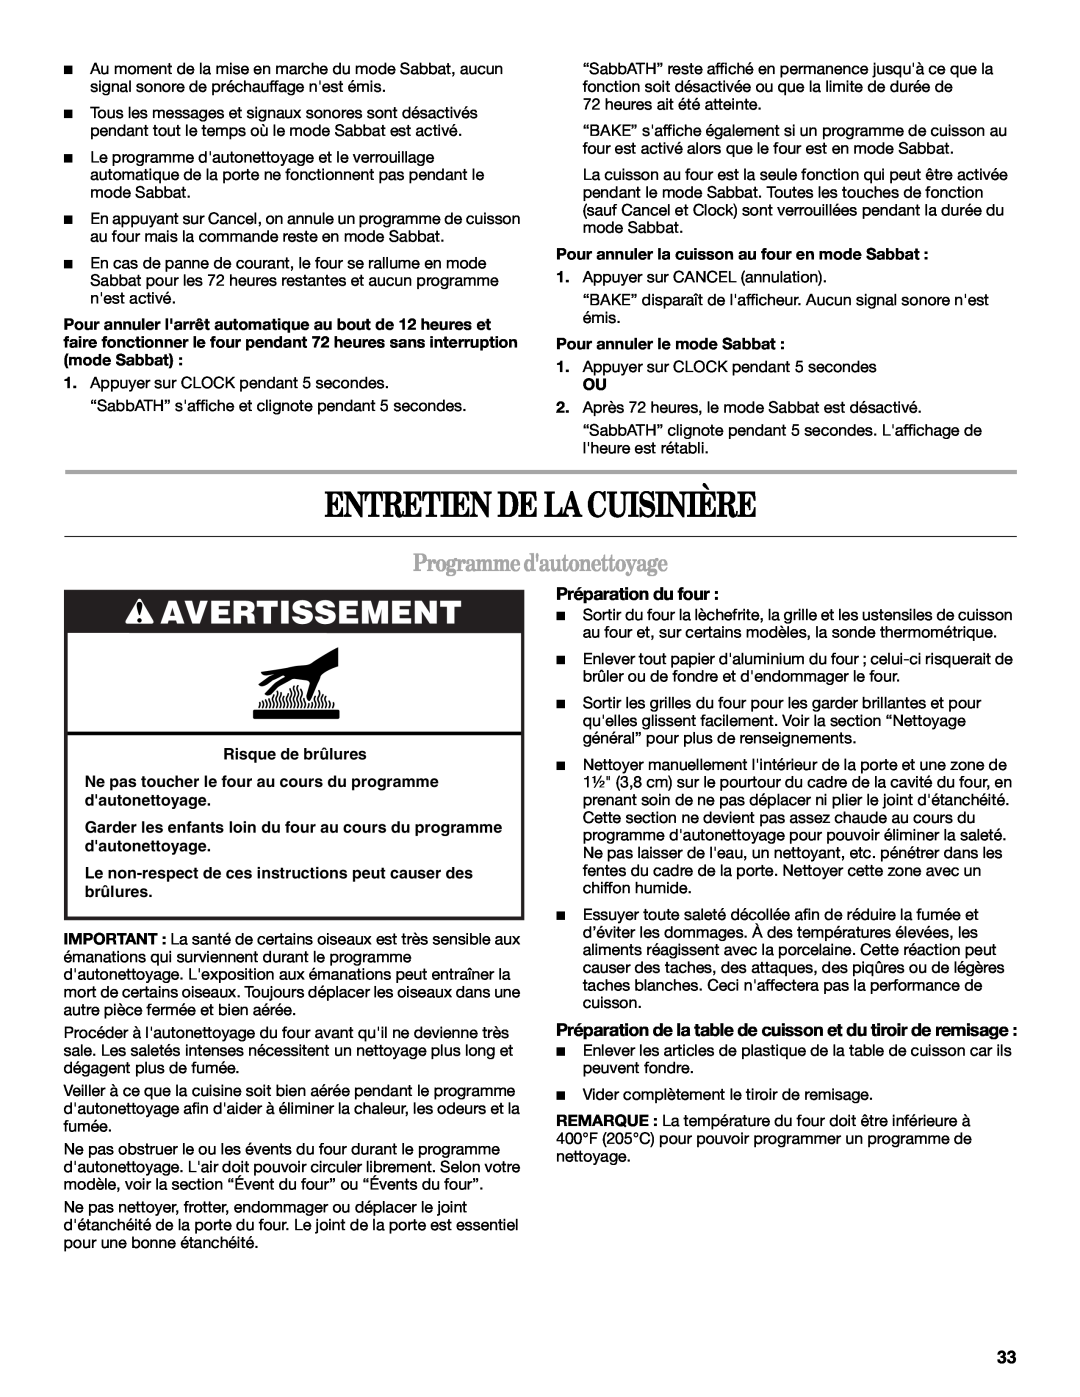 Whirlpool GY397LXUS manual Entretien De La Cuisinière, Programmedautonettoyage, Préparation du four, Avertissement 